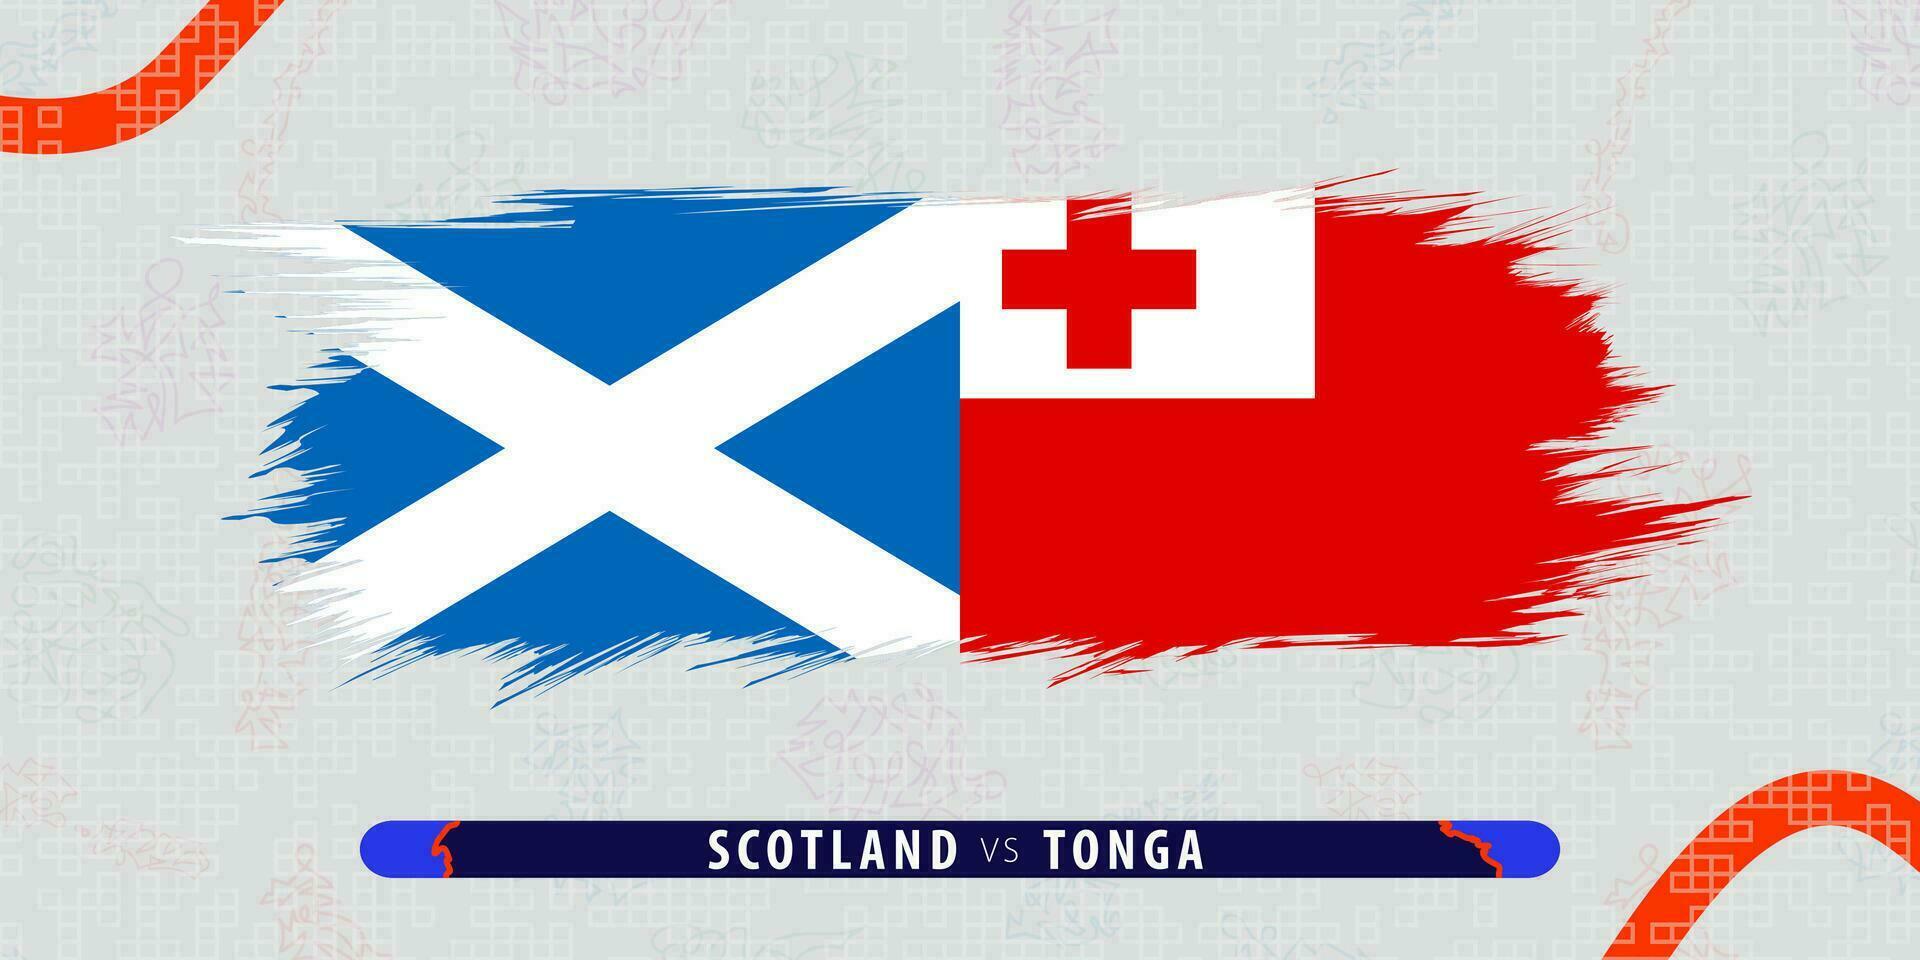 Écosse contre Tonga, international le rugby rencontre illustration dans coup de pinceau style. abstrait grungy icône pour le rugby correspondre. vecteur